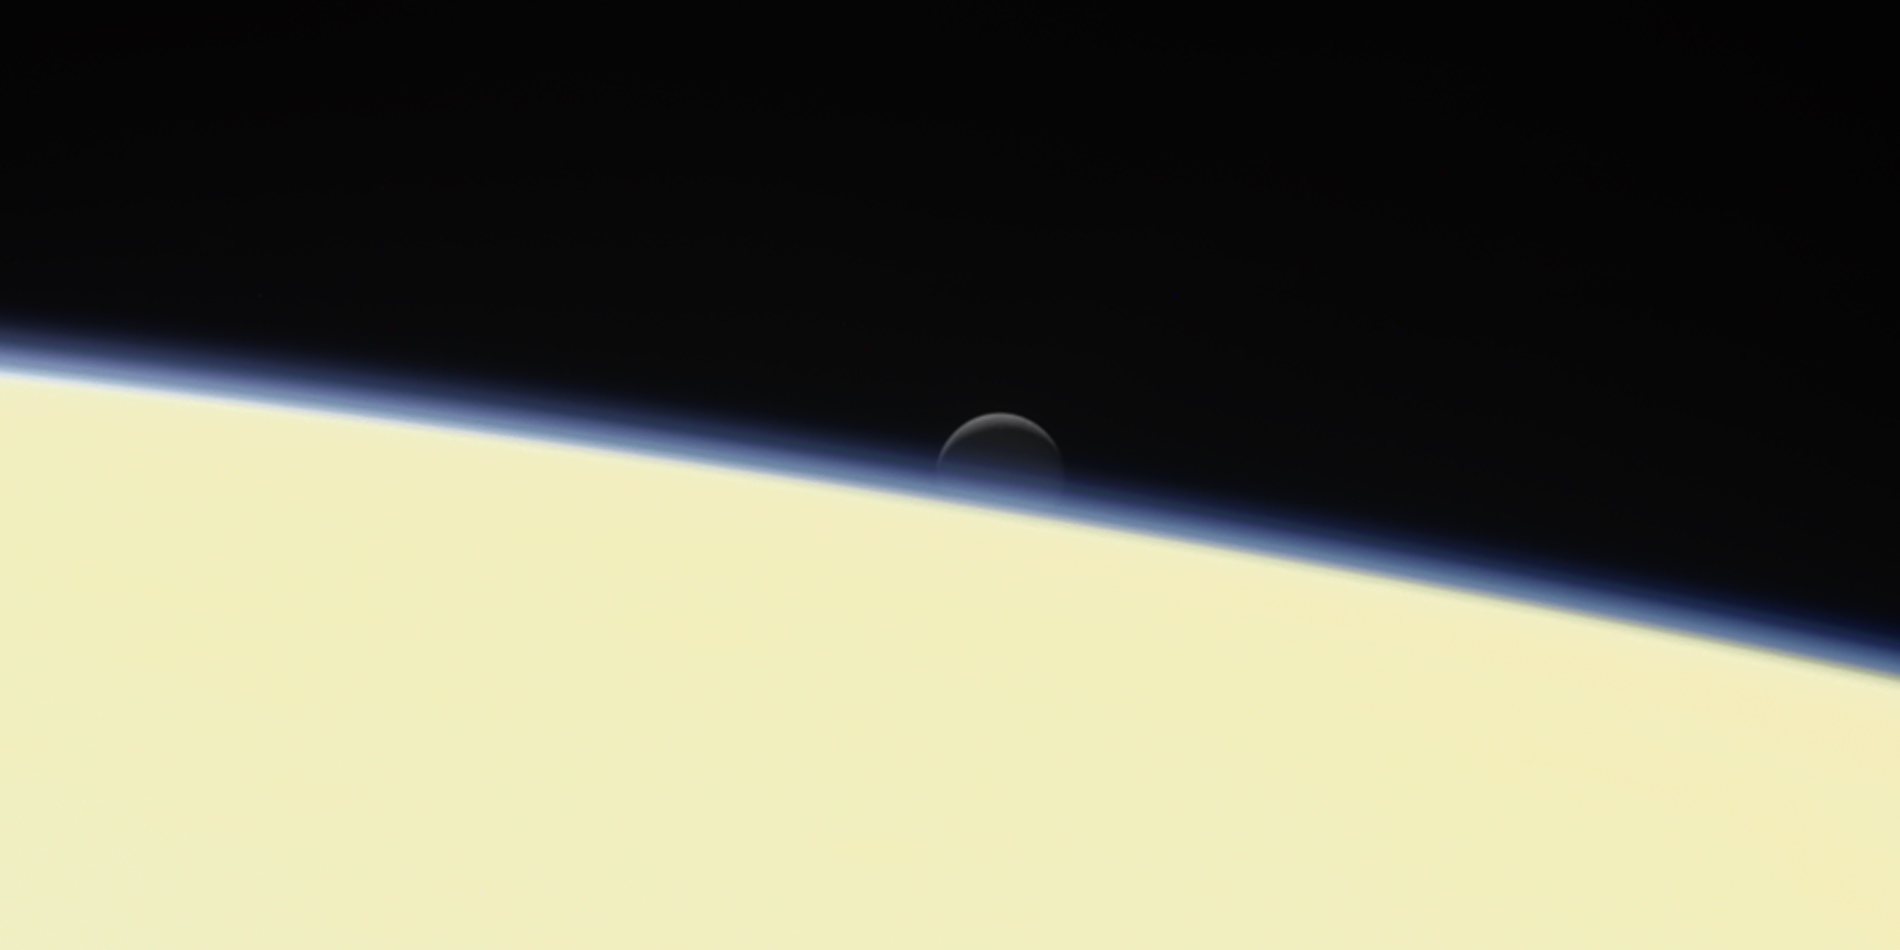 Dernière image d’Encelade